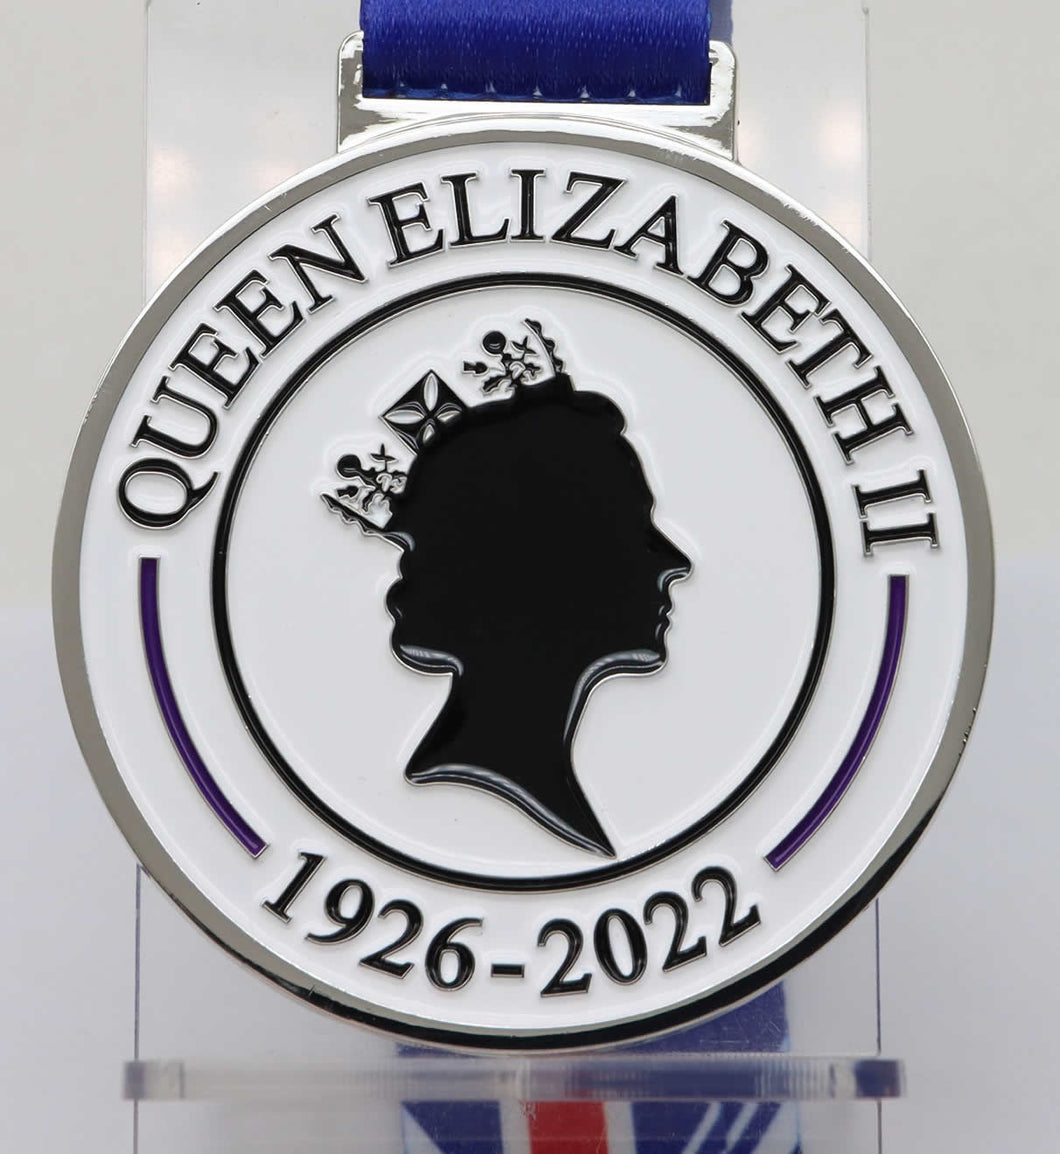 Queen Elizabeth II - In Memoriam